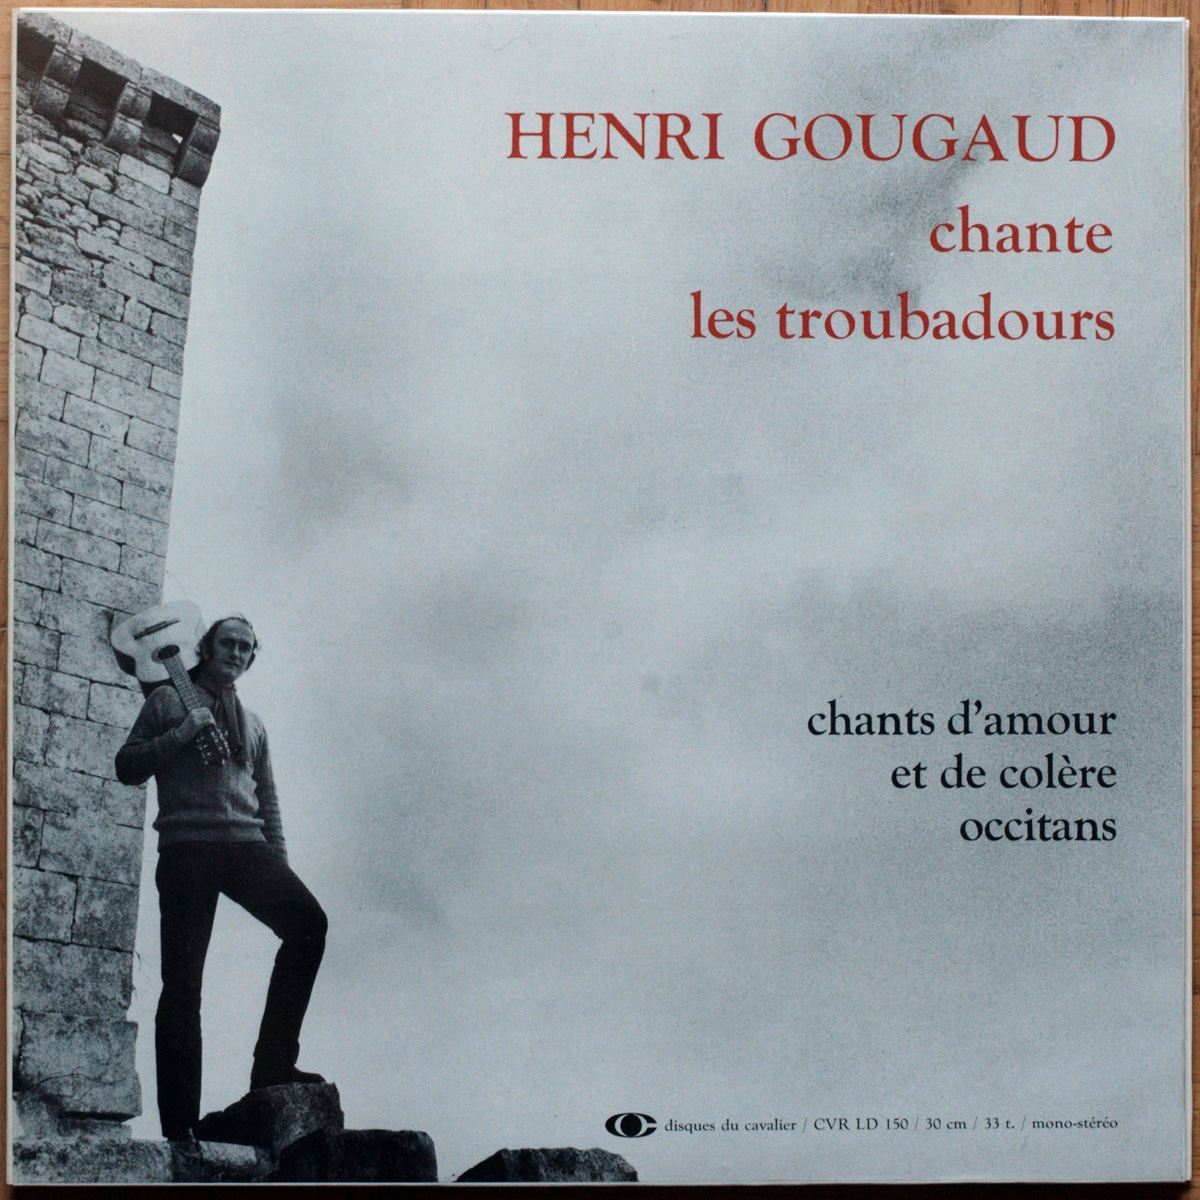 Henri Gougaud • Chante les troubadours • Chants d'amour et de colère occitans • Disques Du Cavalier CVR LD 150